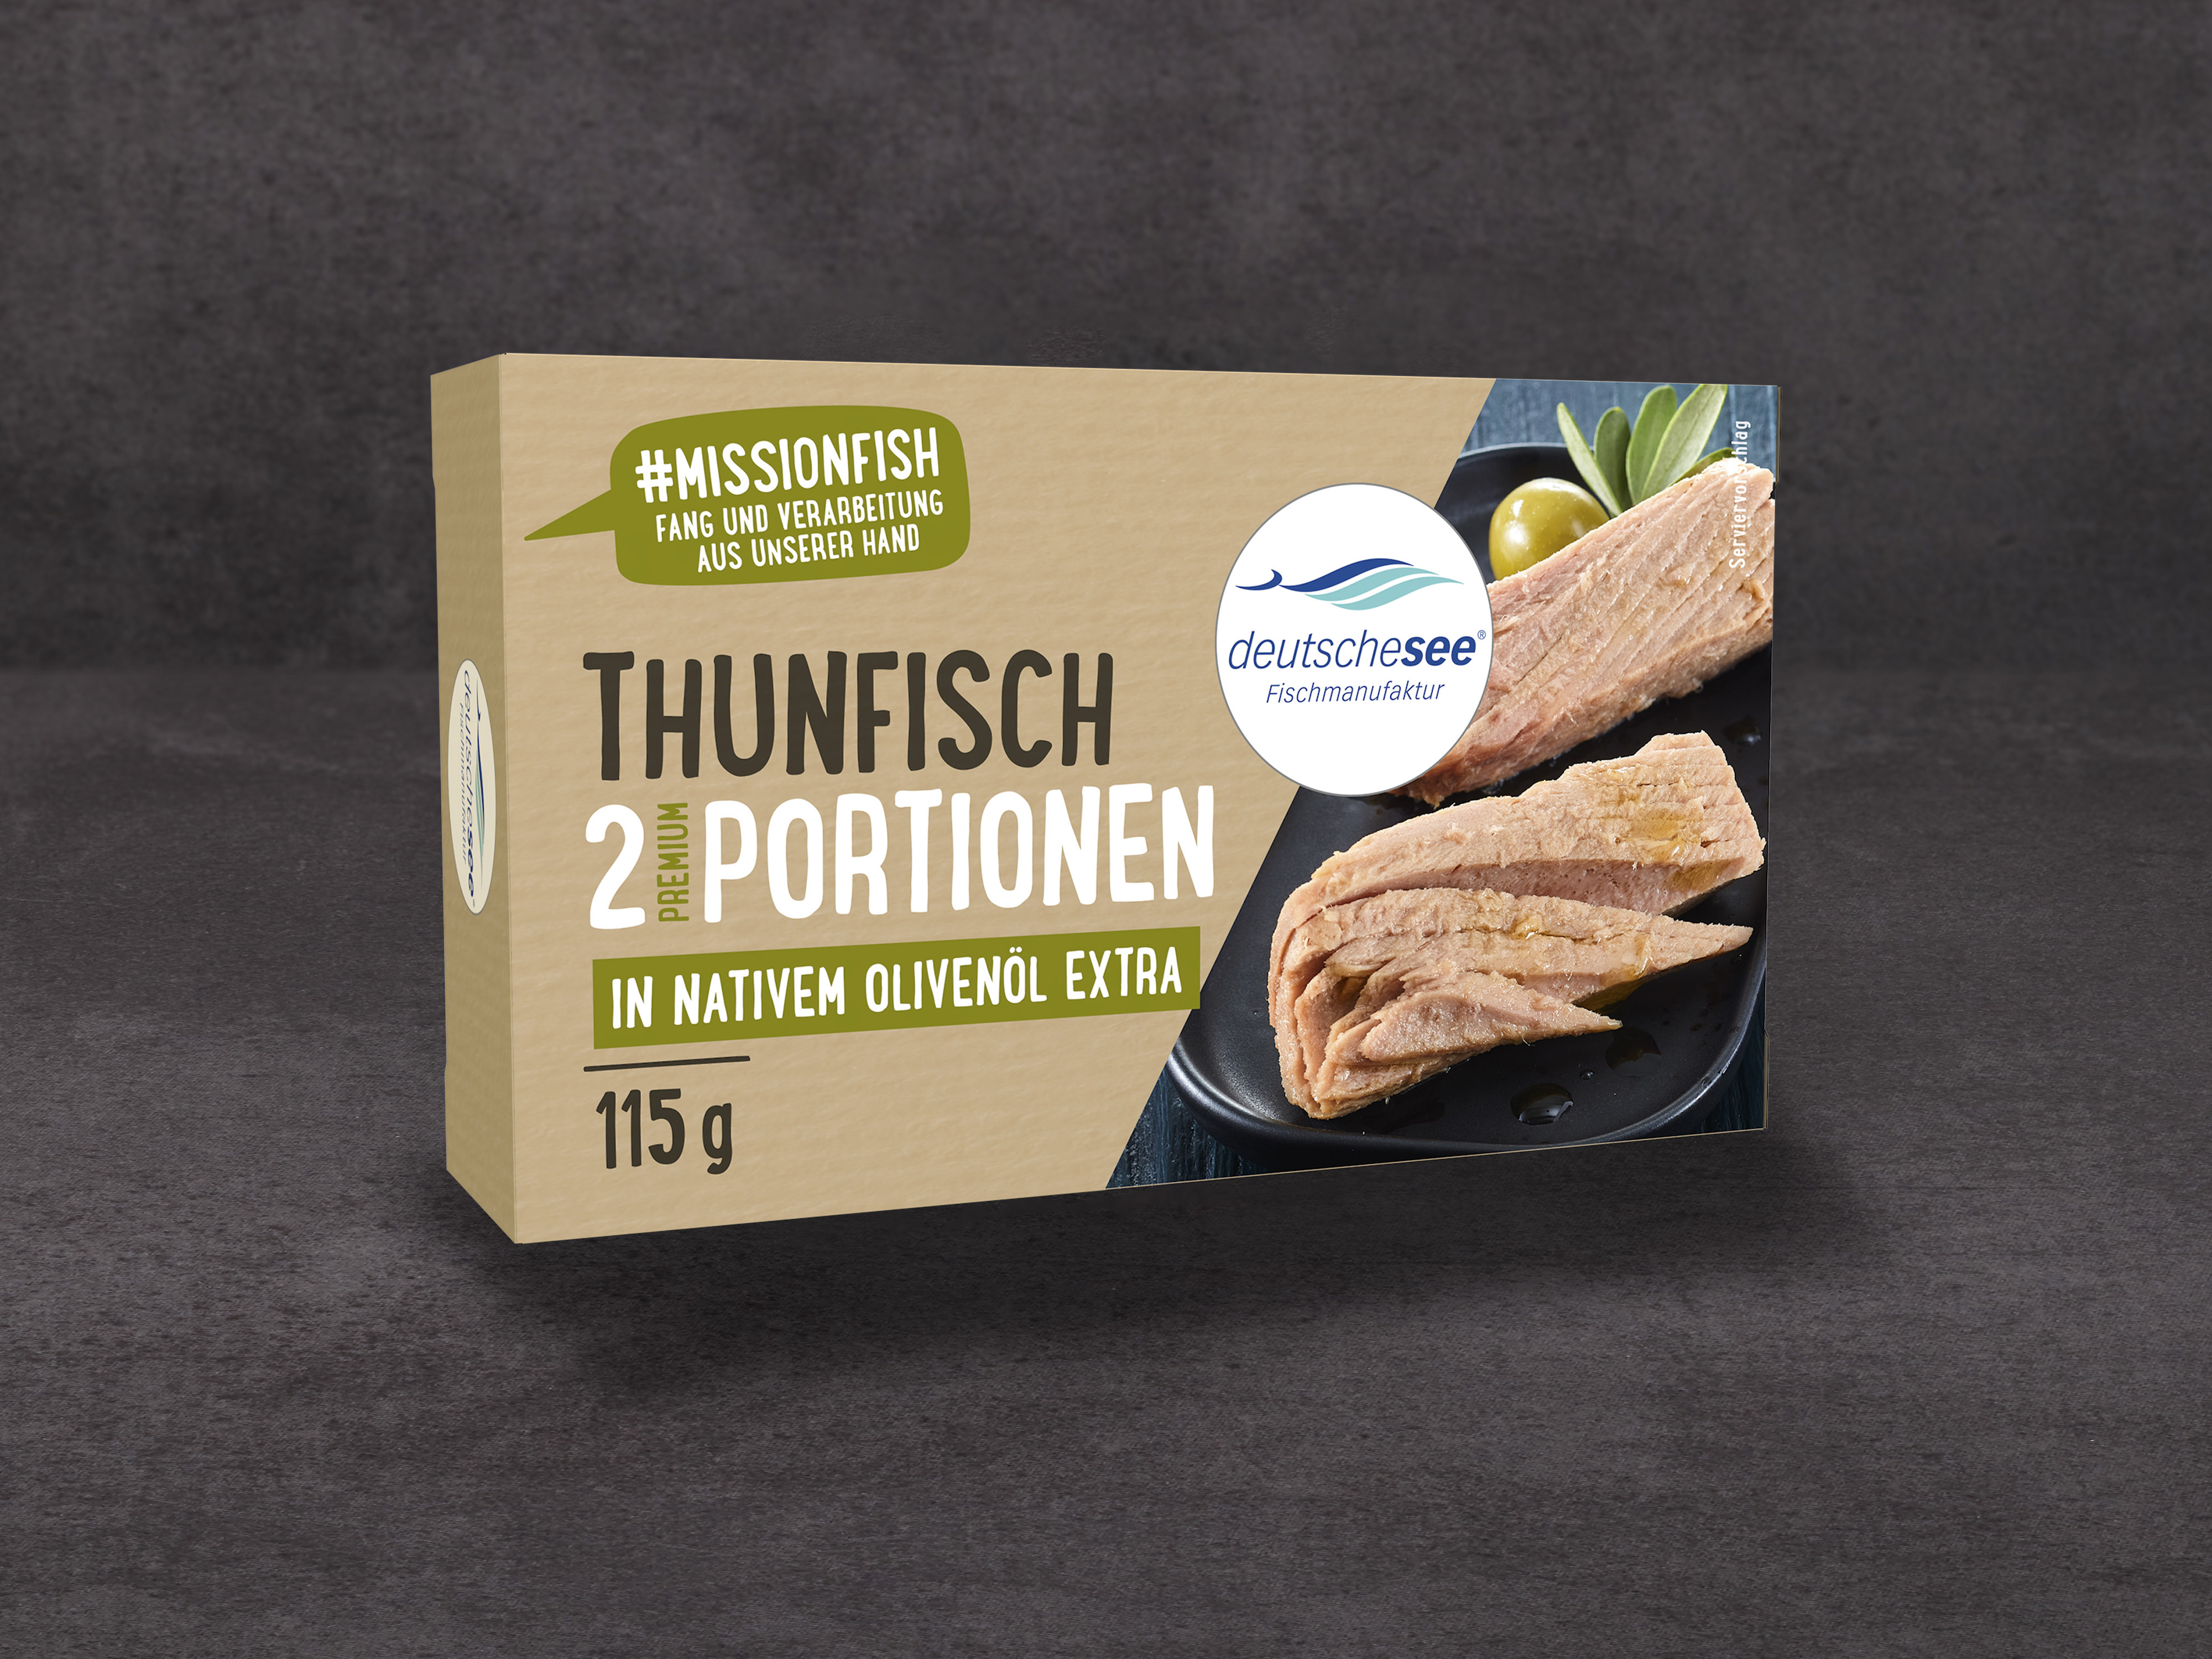 Deutsche See »Thunfisch-Filet in Olivenöl« · 115g